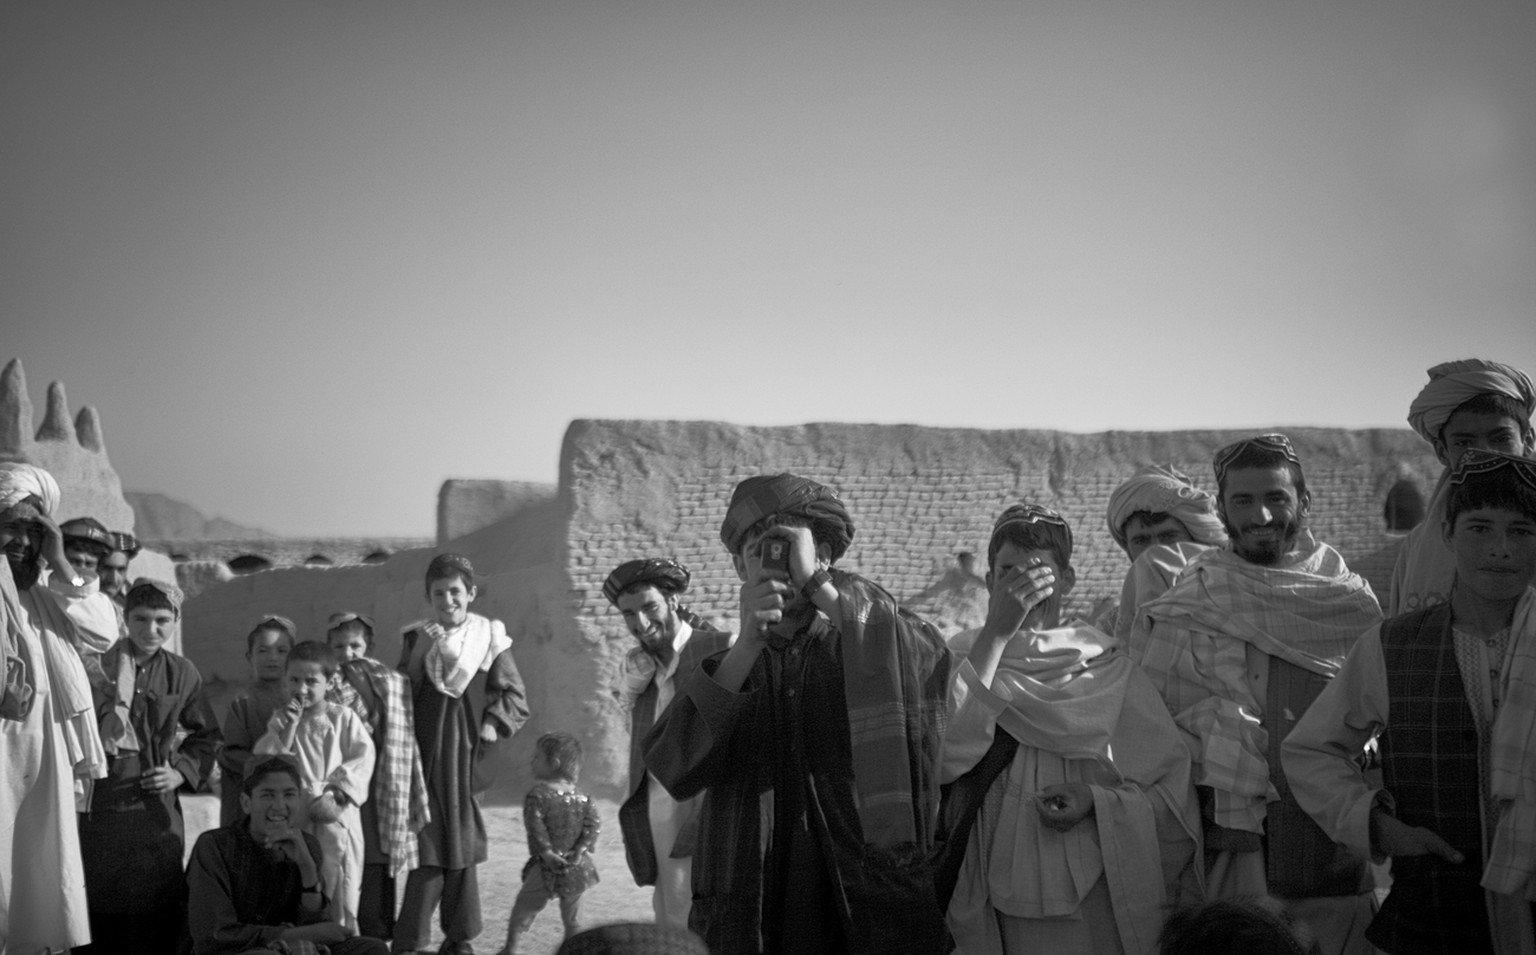 Salavat, Afghanistan, September 2010. Afghanische Männer fotografieren kanadische Soldaten des Royal Canadian Regiment auf ihrer Patrouille. Als die kanadische Patrouille kurz darauf das Dorf verlässt, wird sie mit Handgranaten angegriffen.&nbsp;